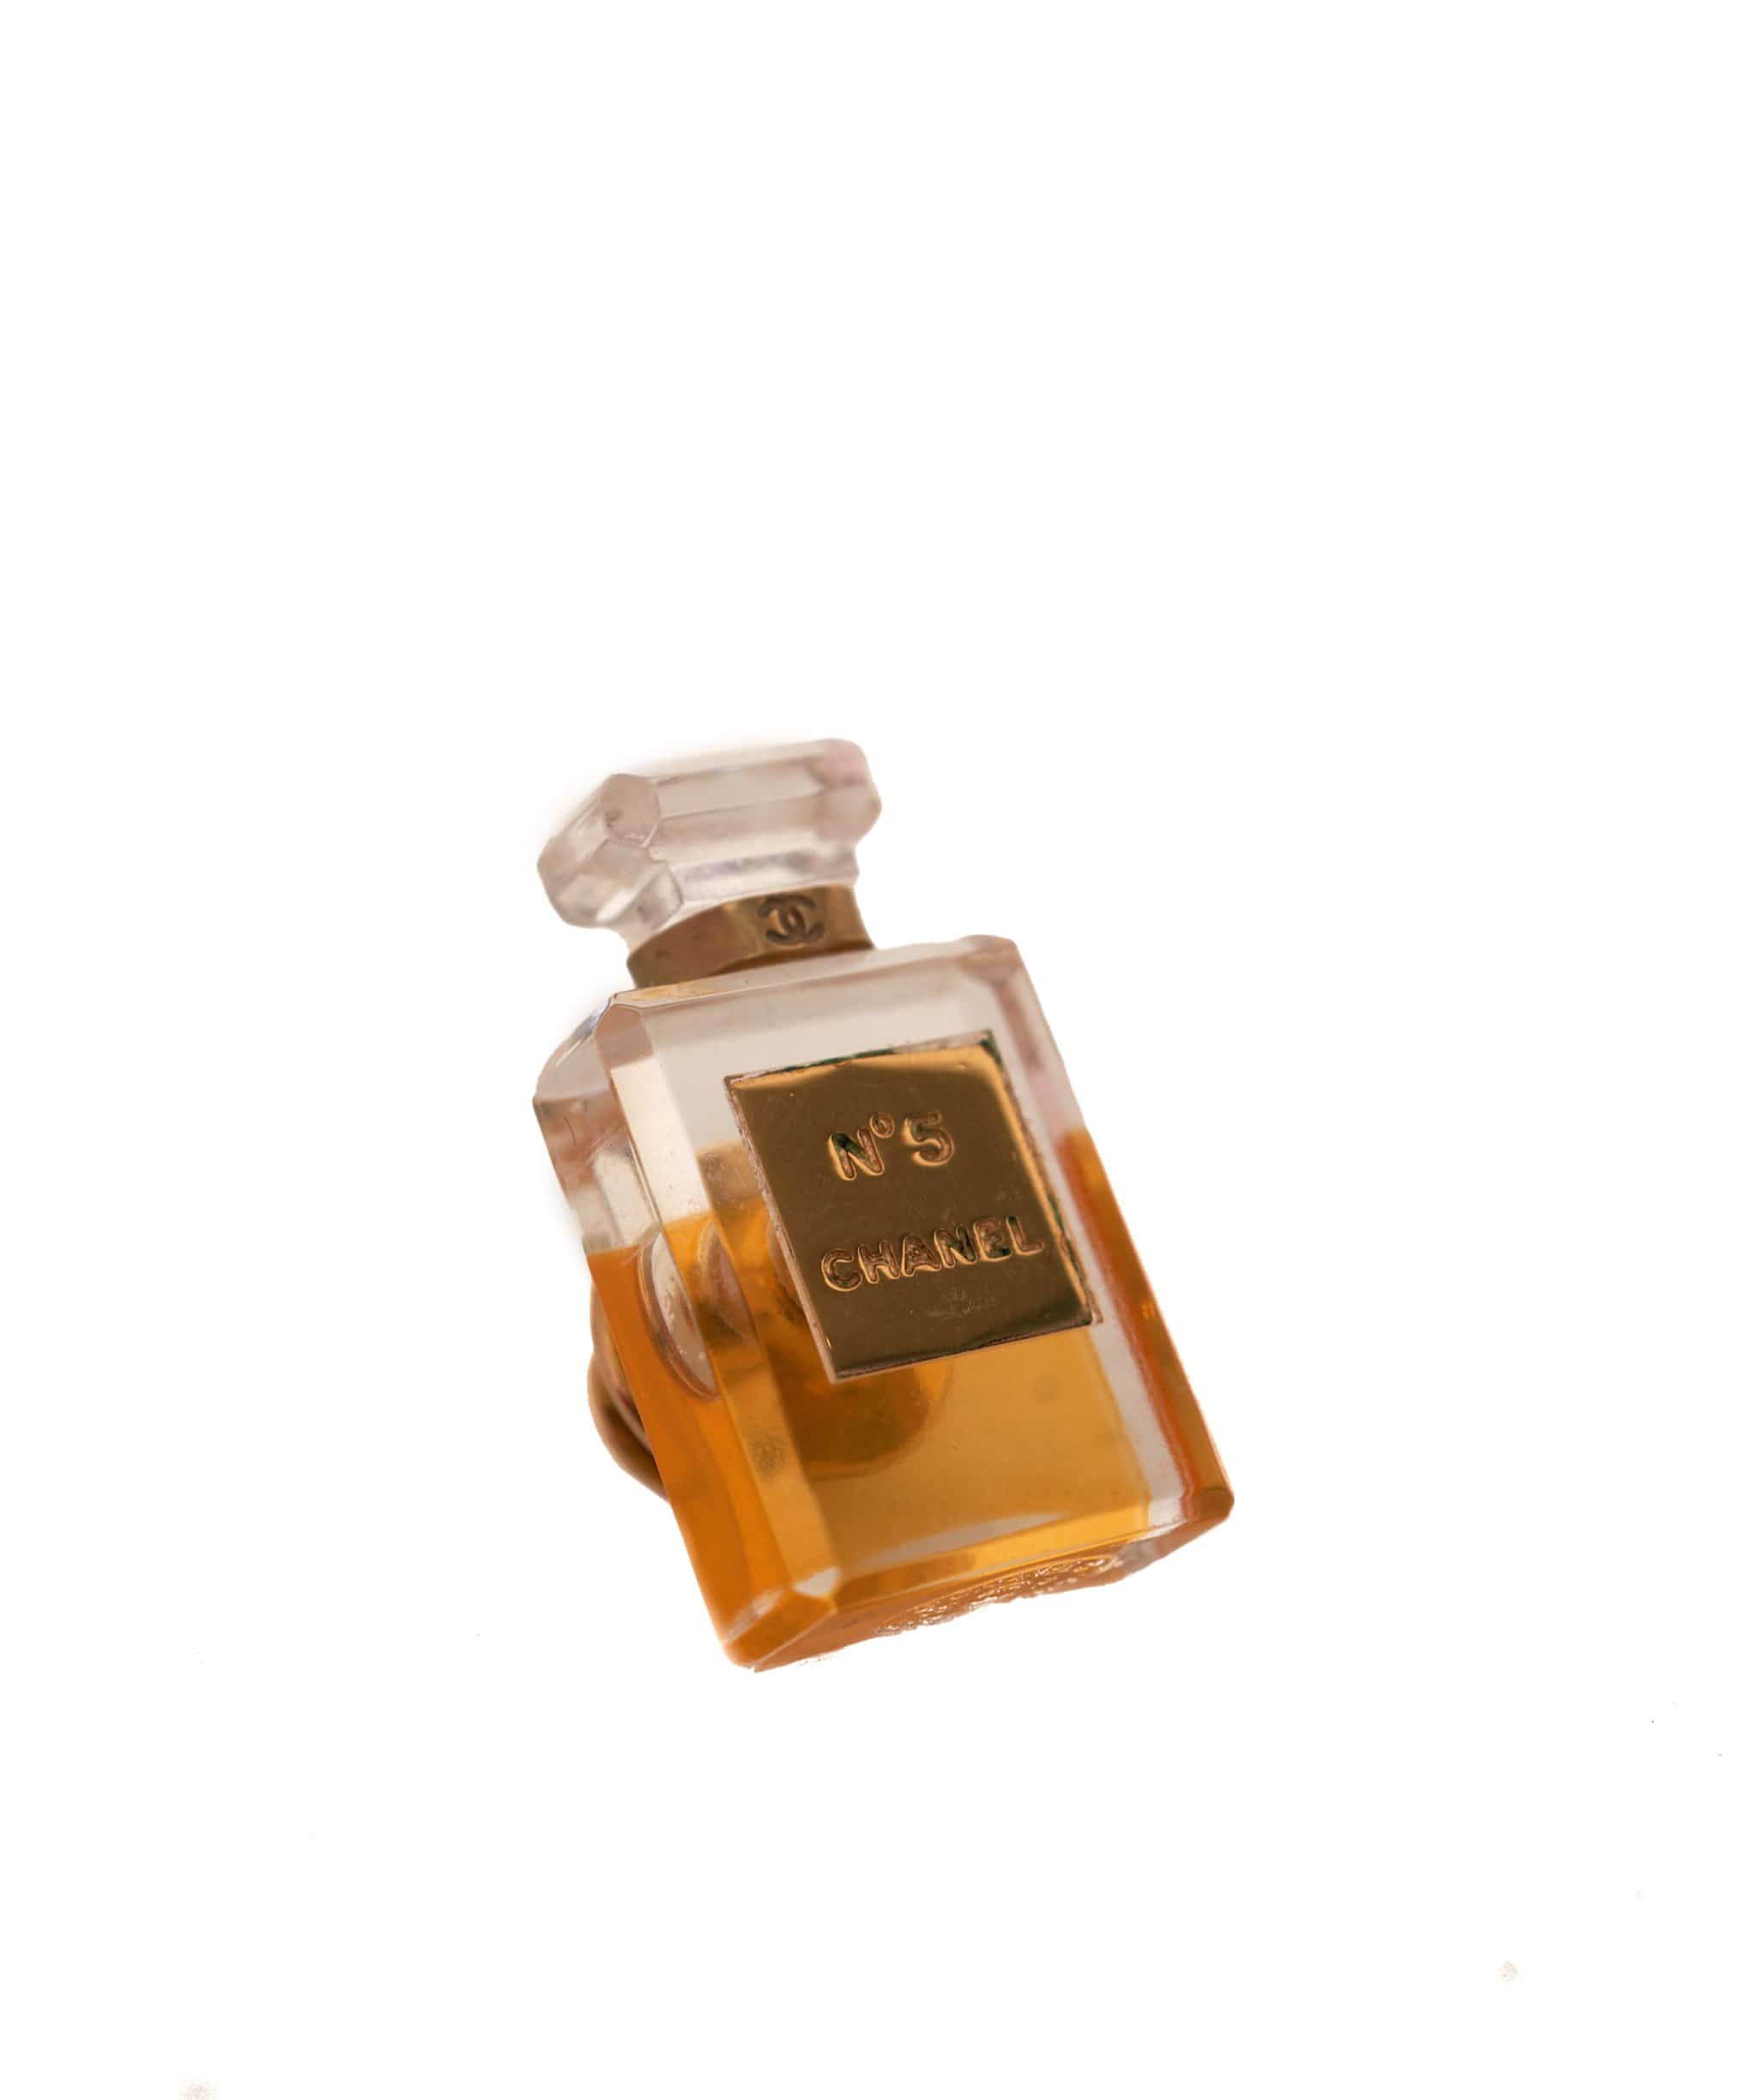 Chanel perfume bottle brooch